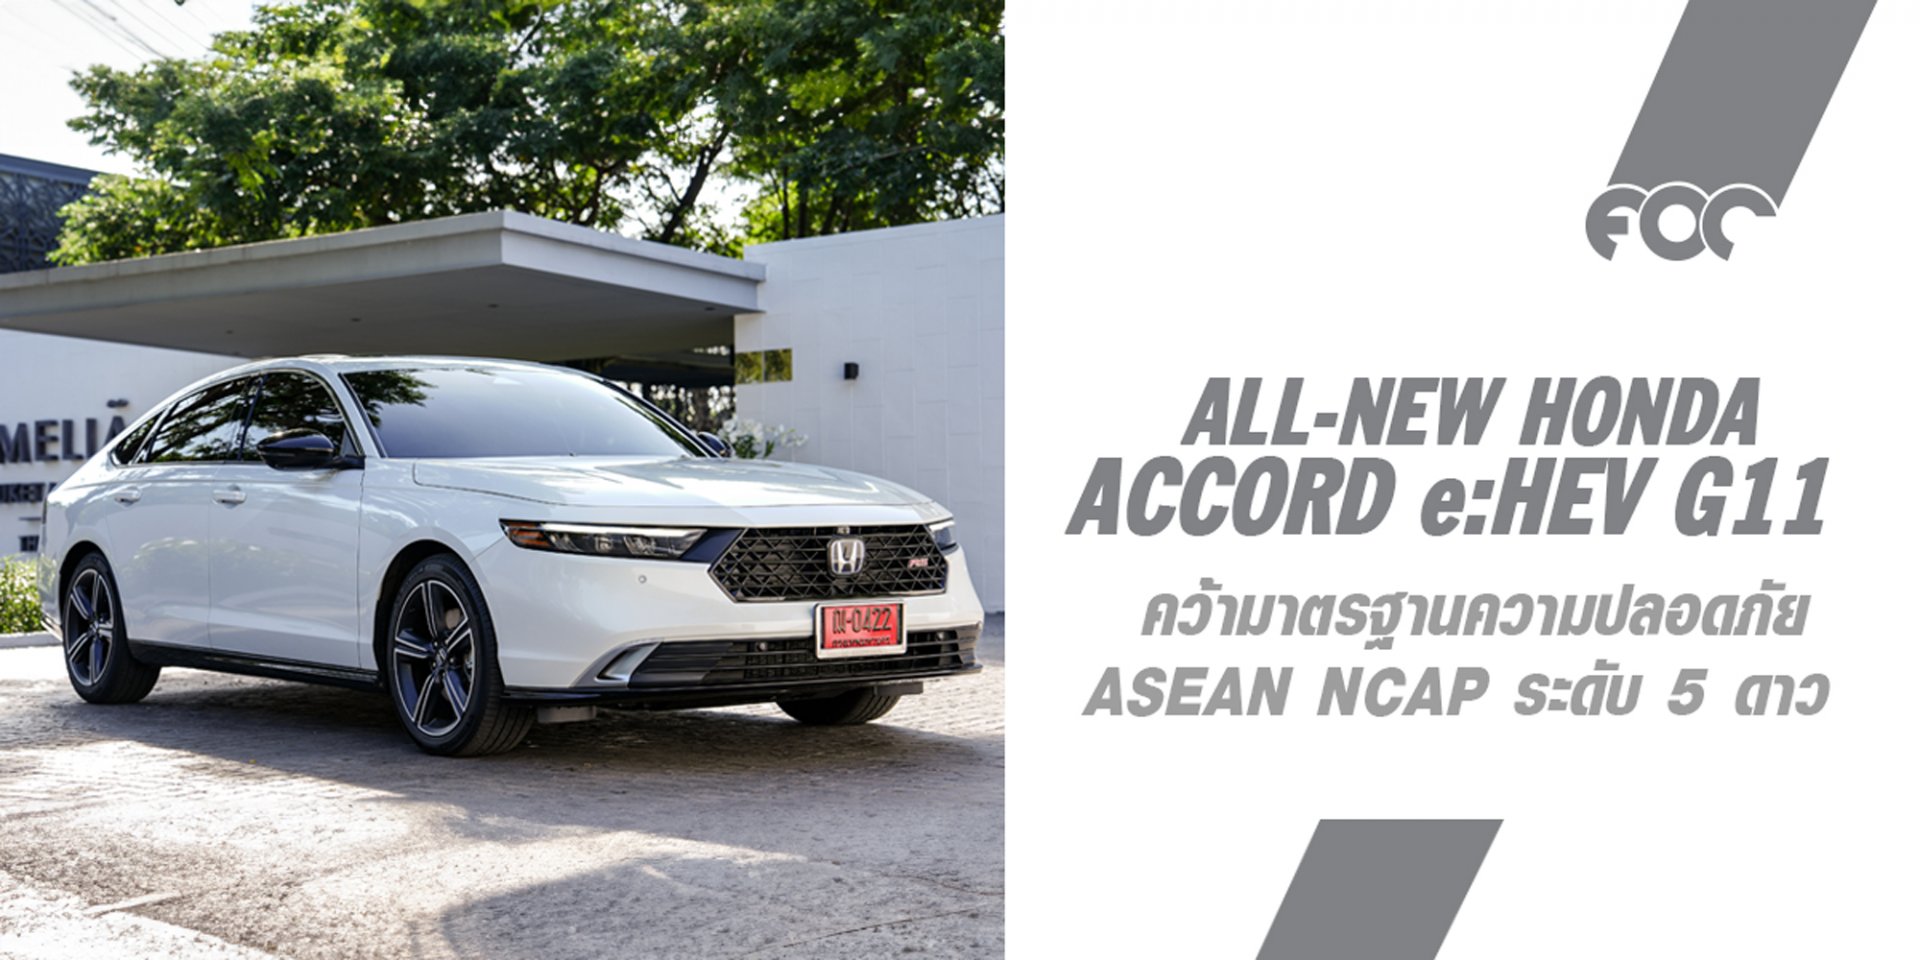 ฮอนด้า แอคคอร์ด อี:เอชอีวี ใหม่ คว้ามาตรฐานความปลอดภัย ASEAN NCAP ระดับ 5 ดาว 